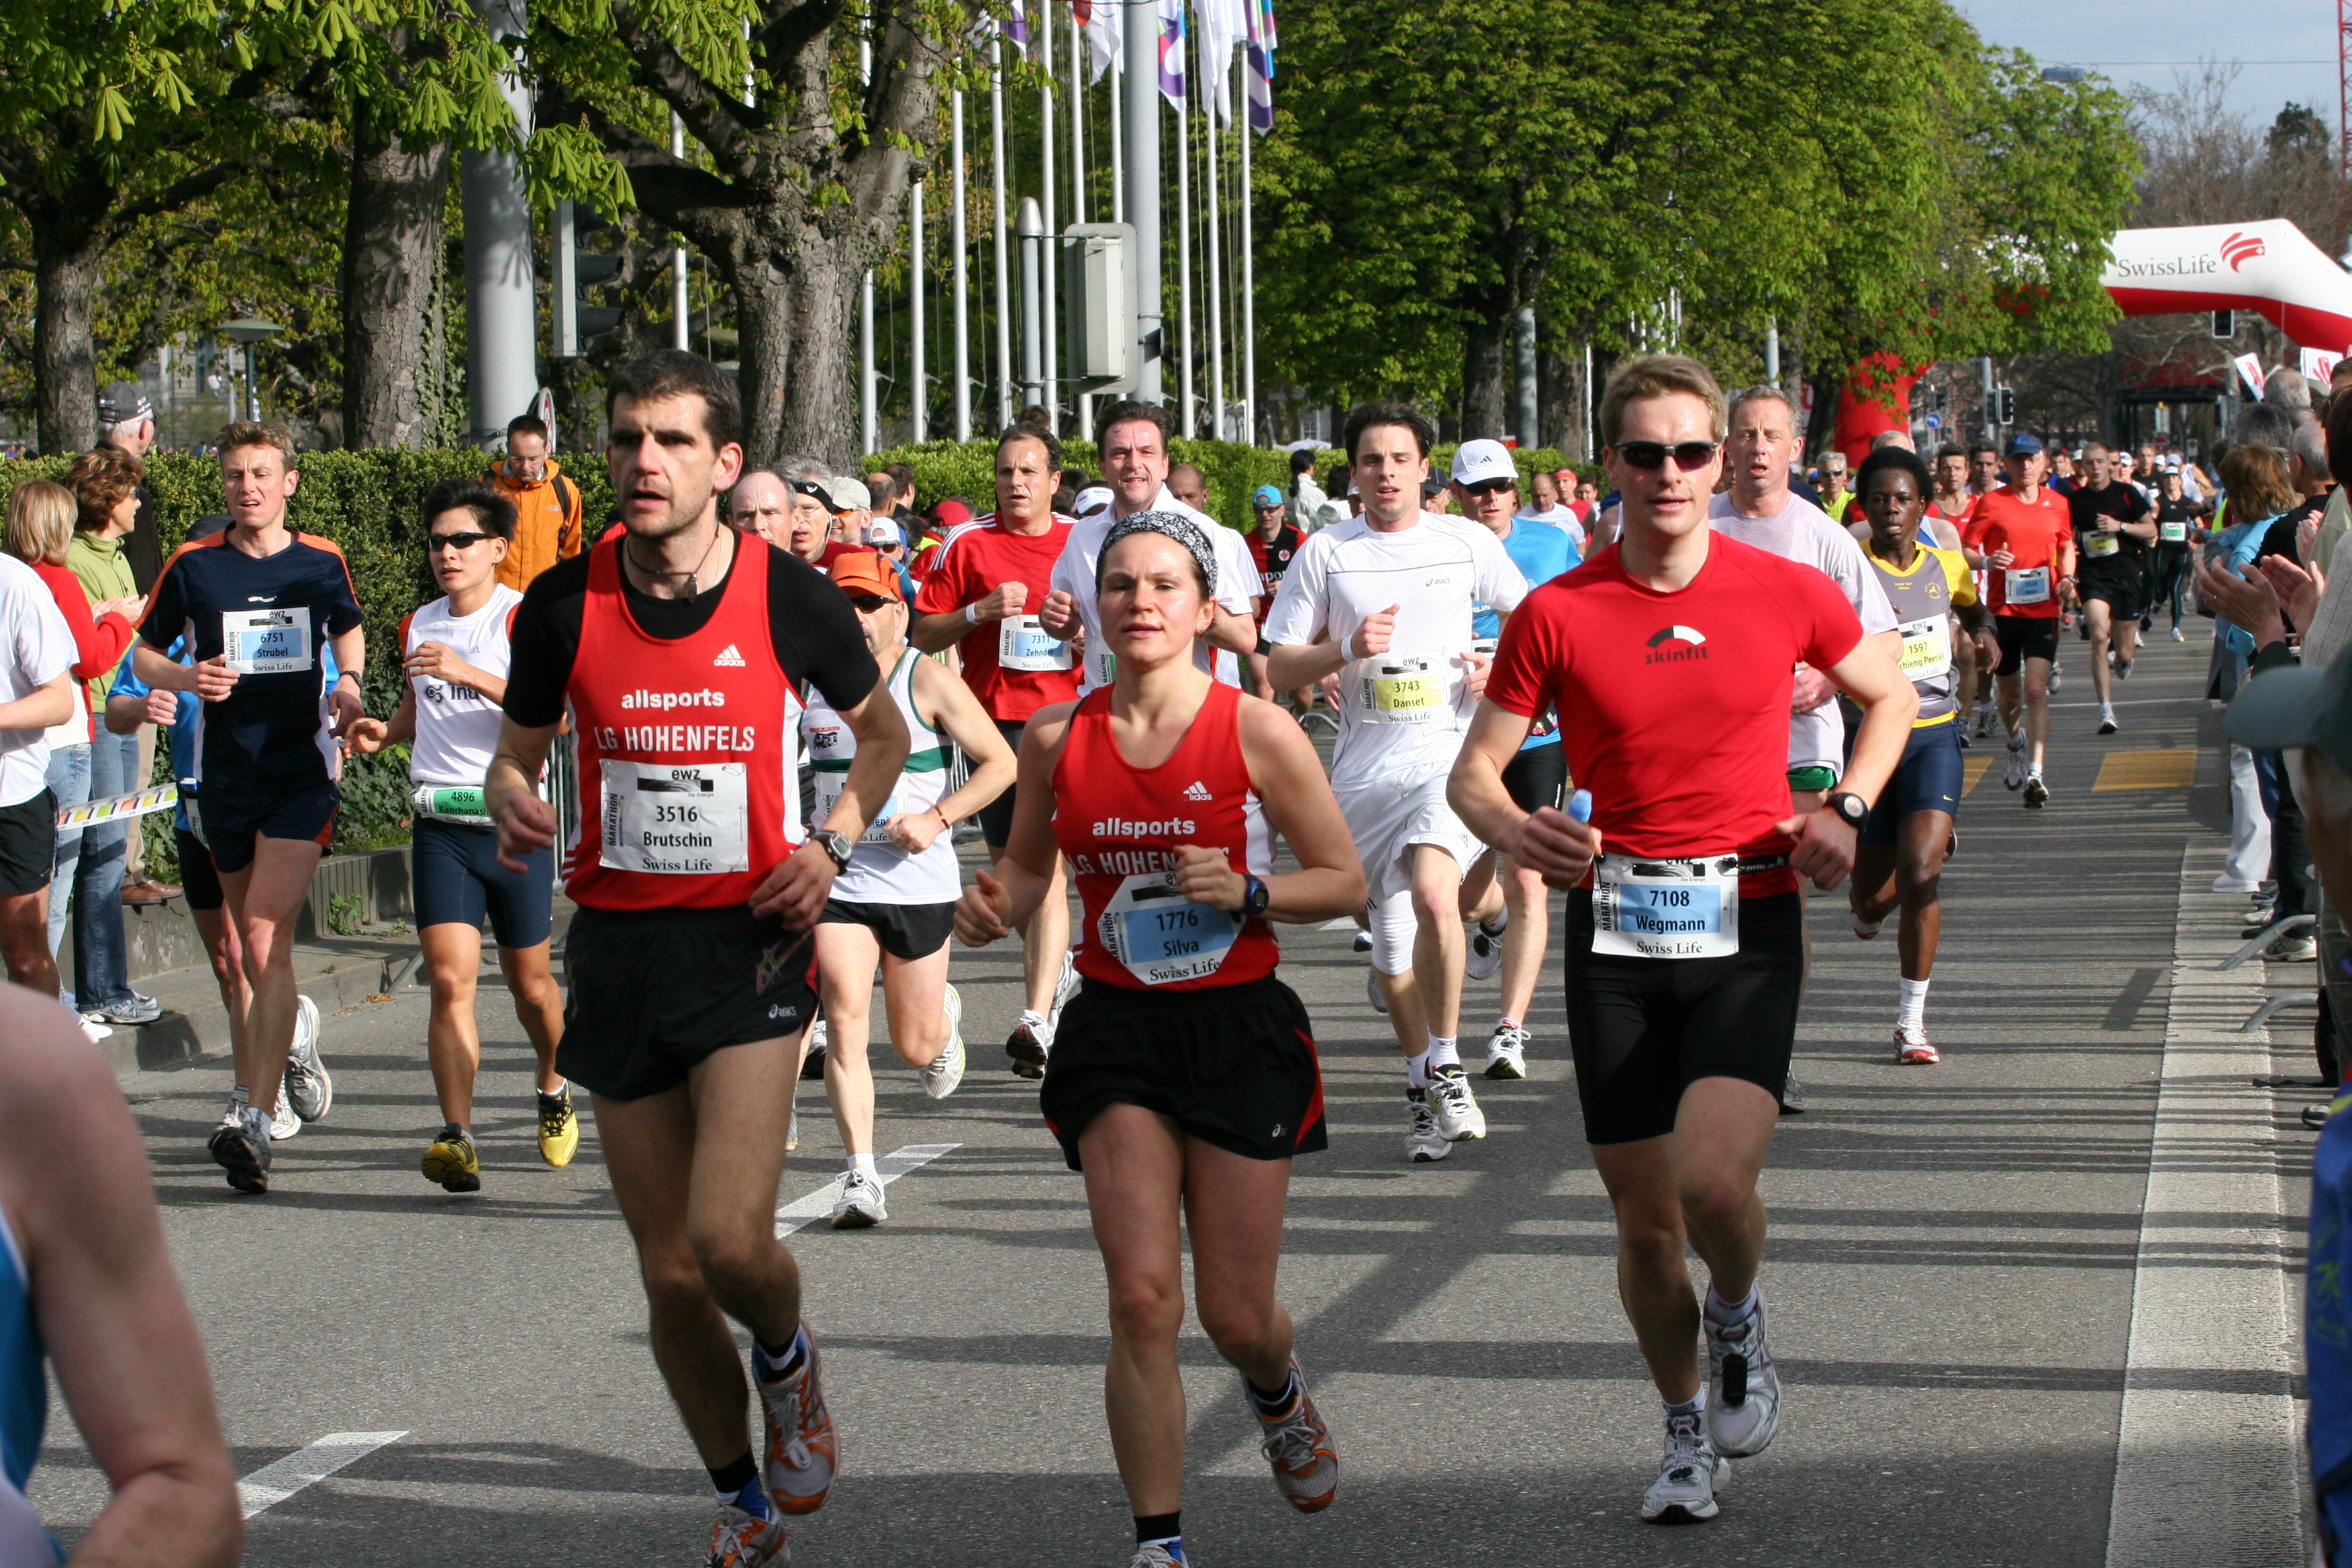 Marathon runners photo